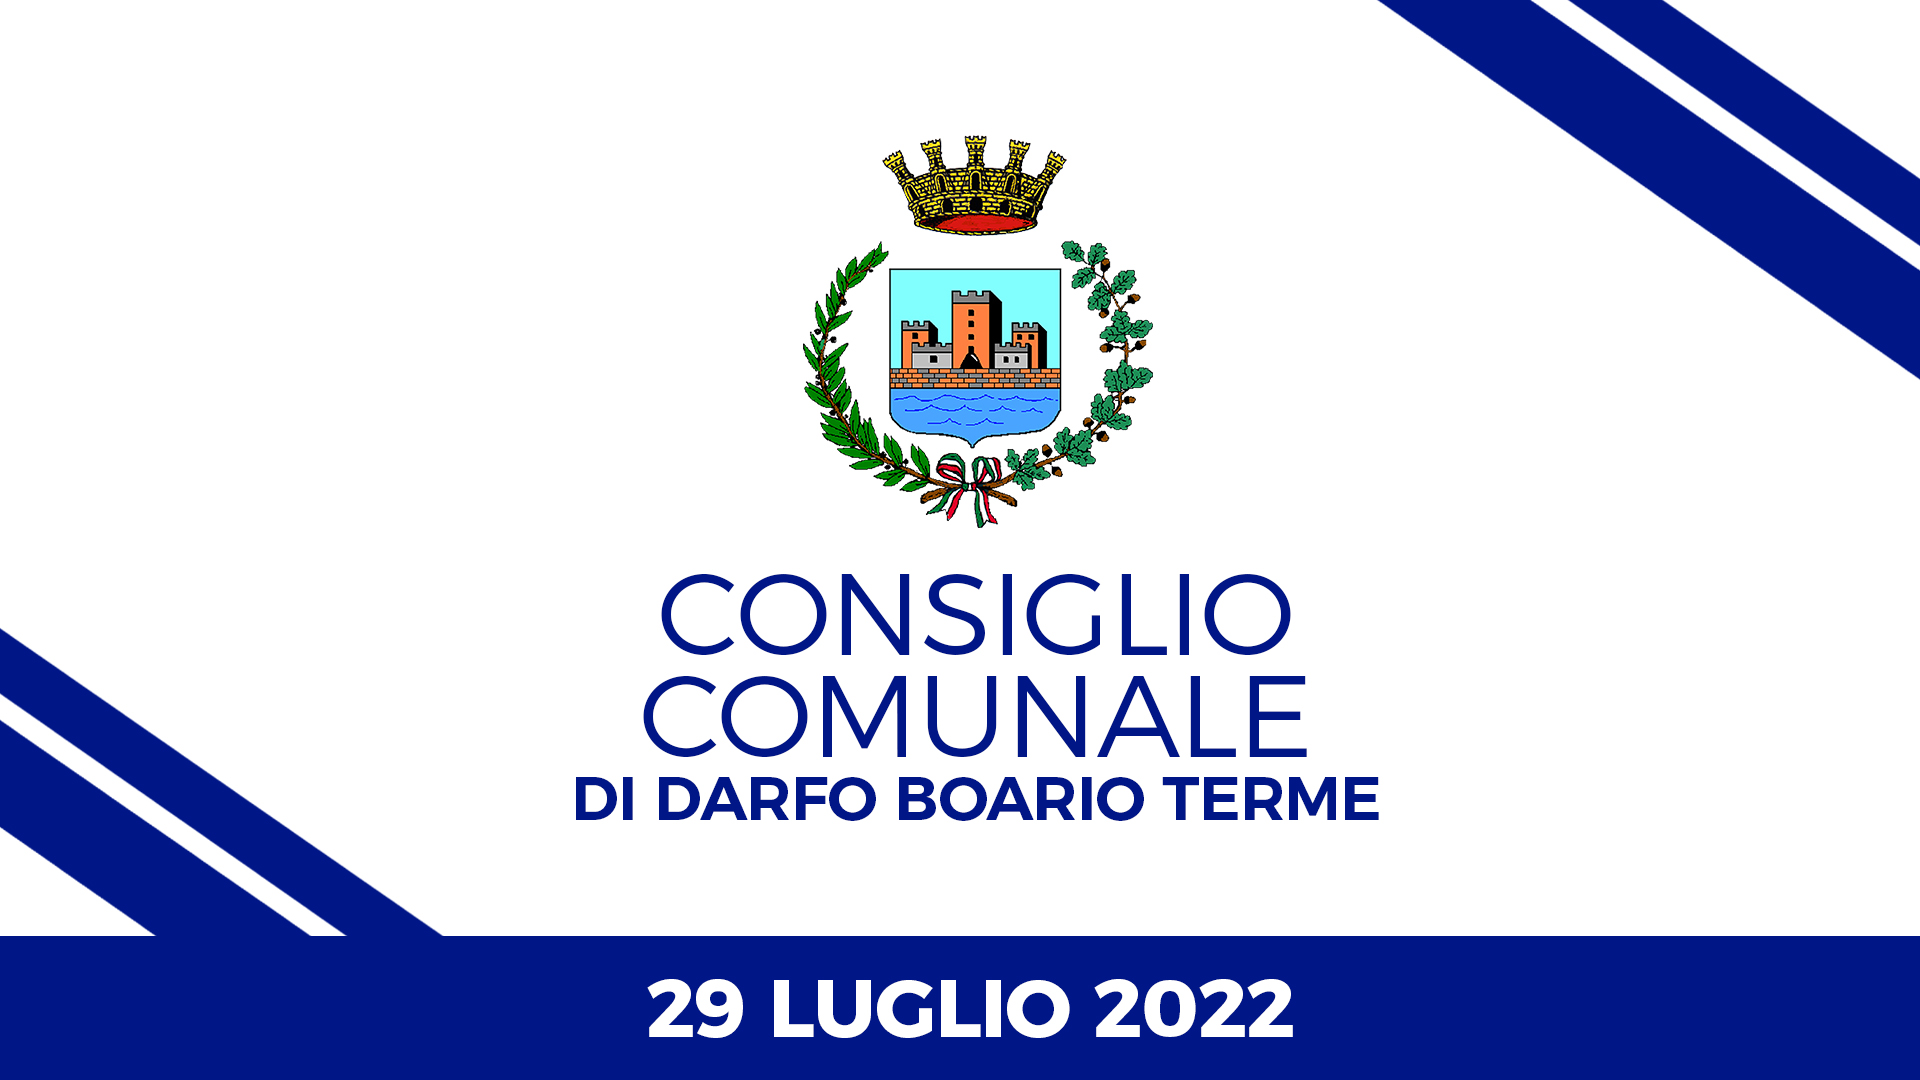 Consiglio Comunale di Darfo Boario Terme del 29 luglio 2022